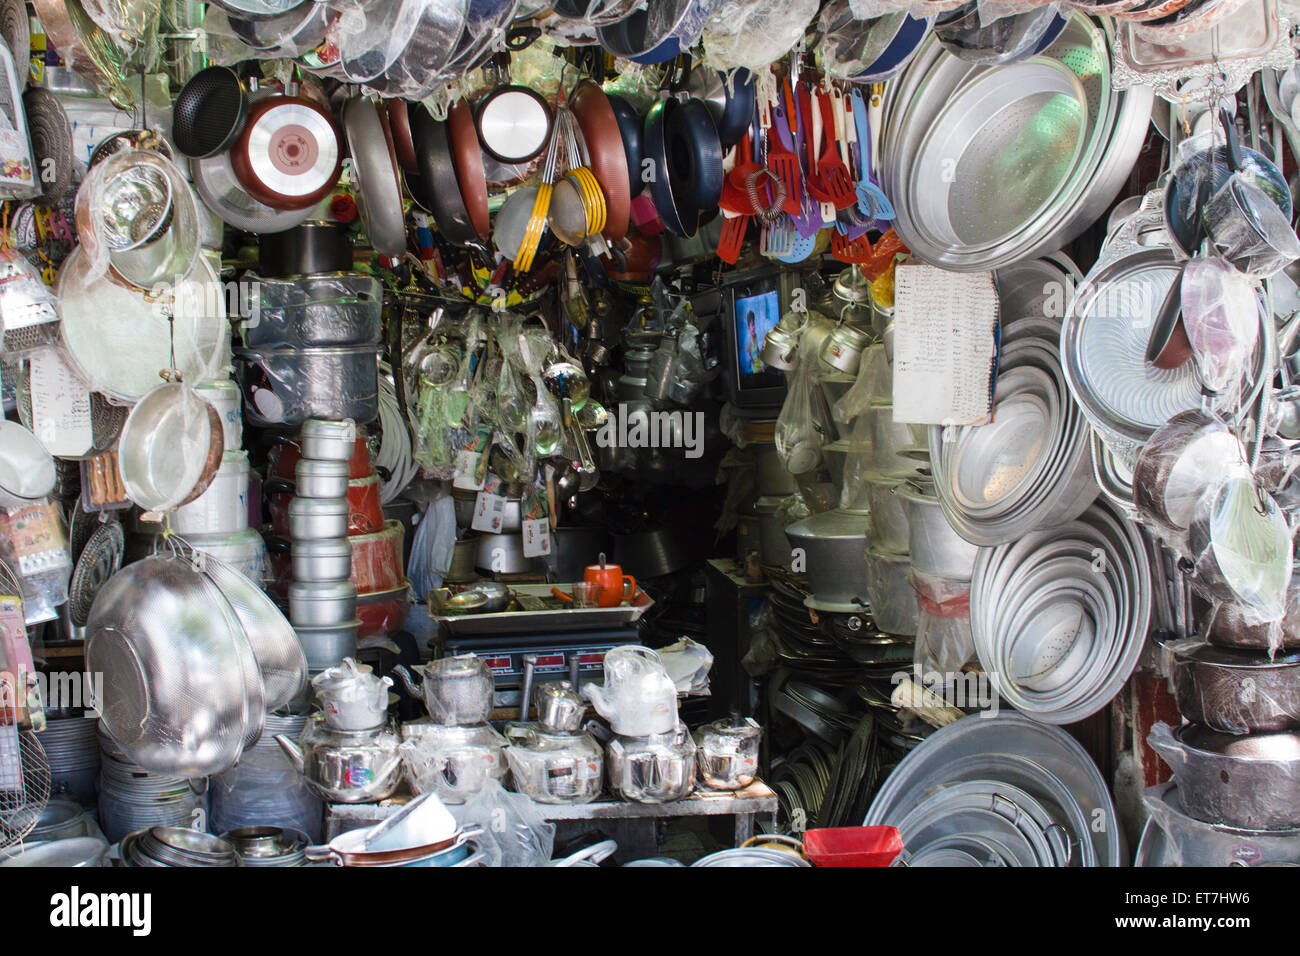 L'Iran, Shiraz, assortiment d'un magasin de matériel Banque D'Images